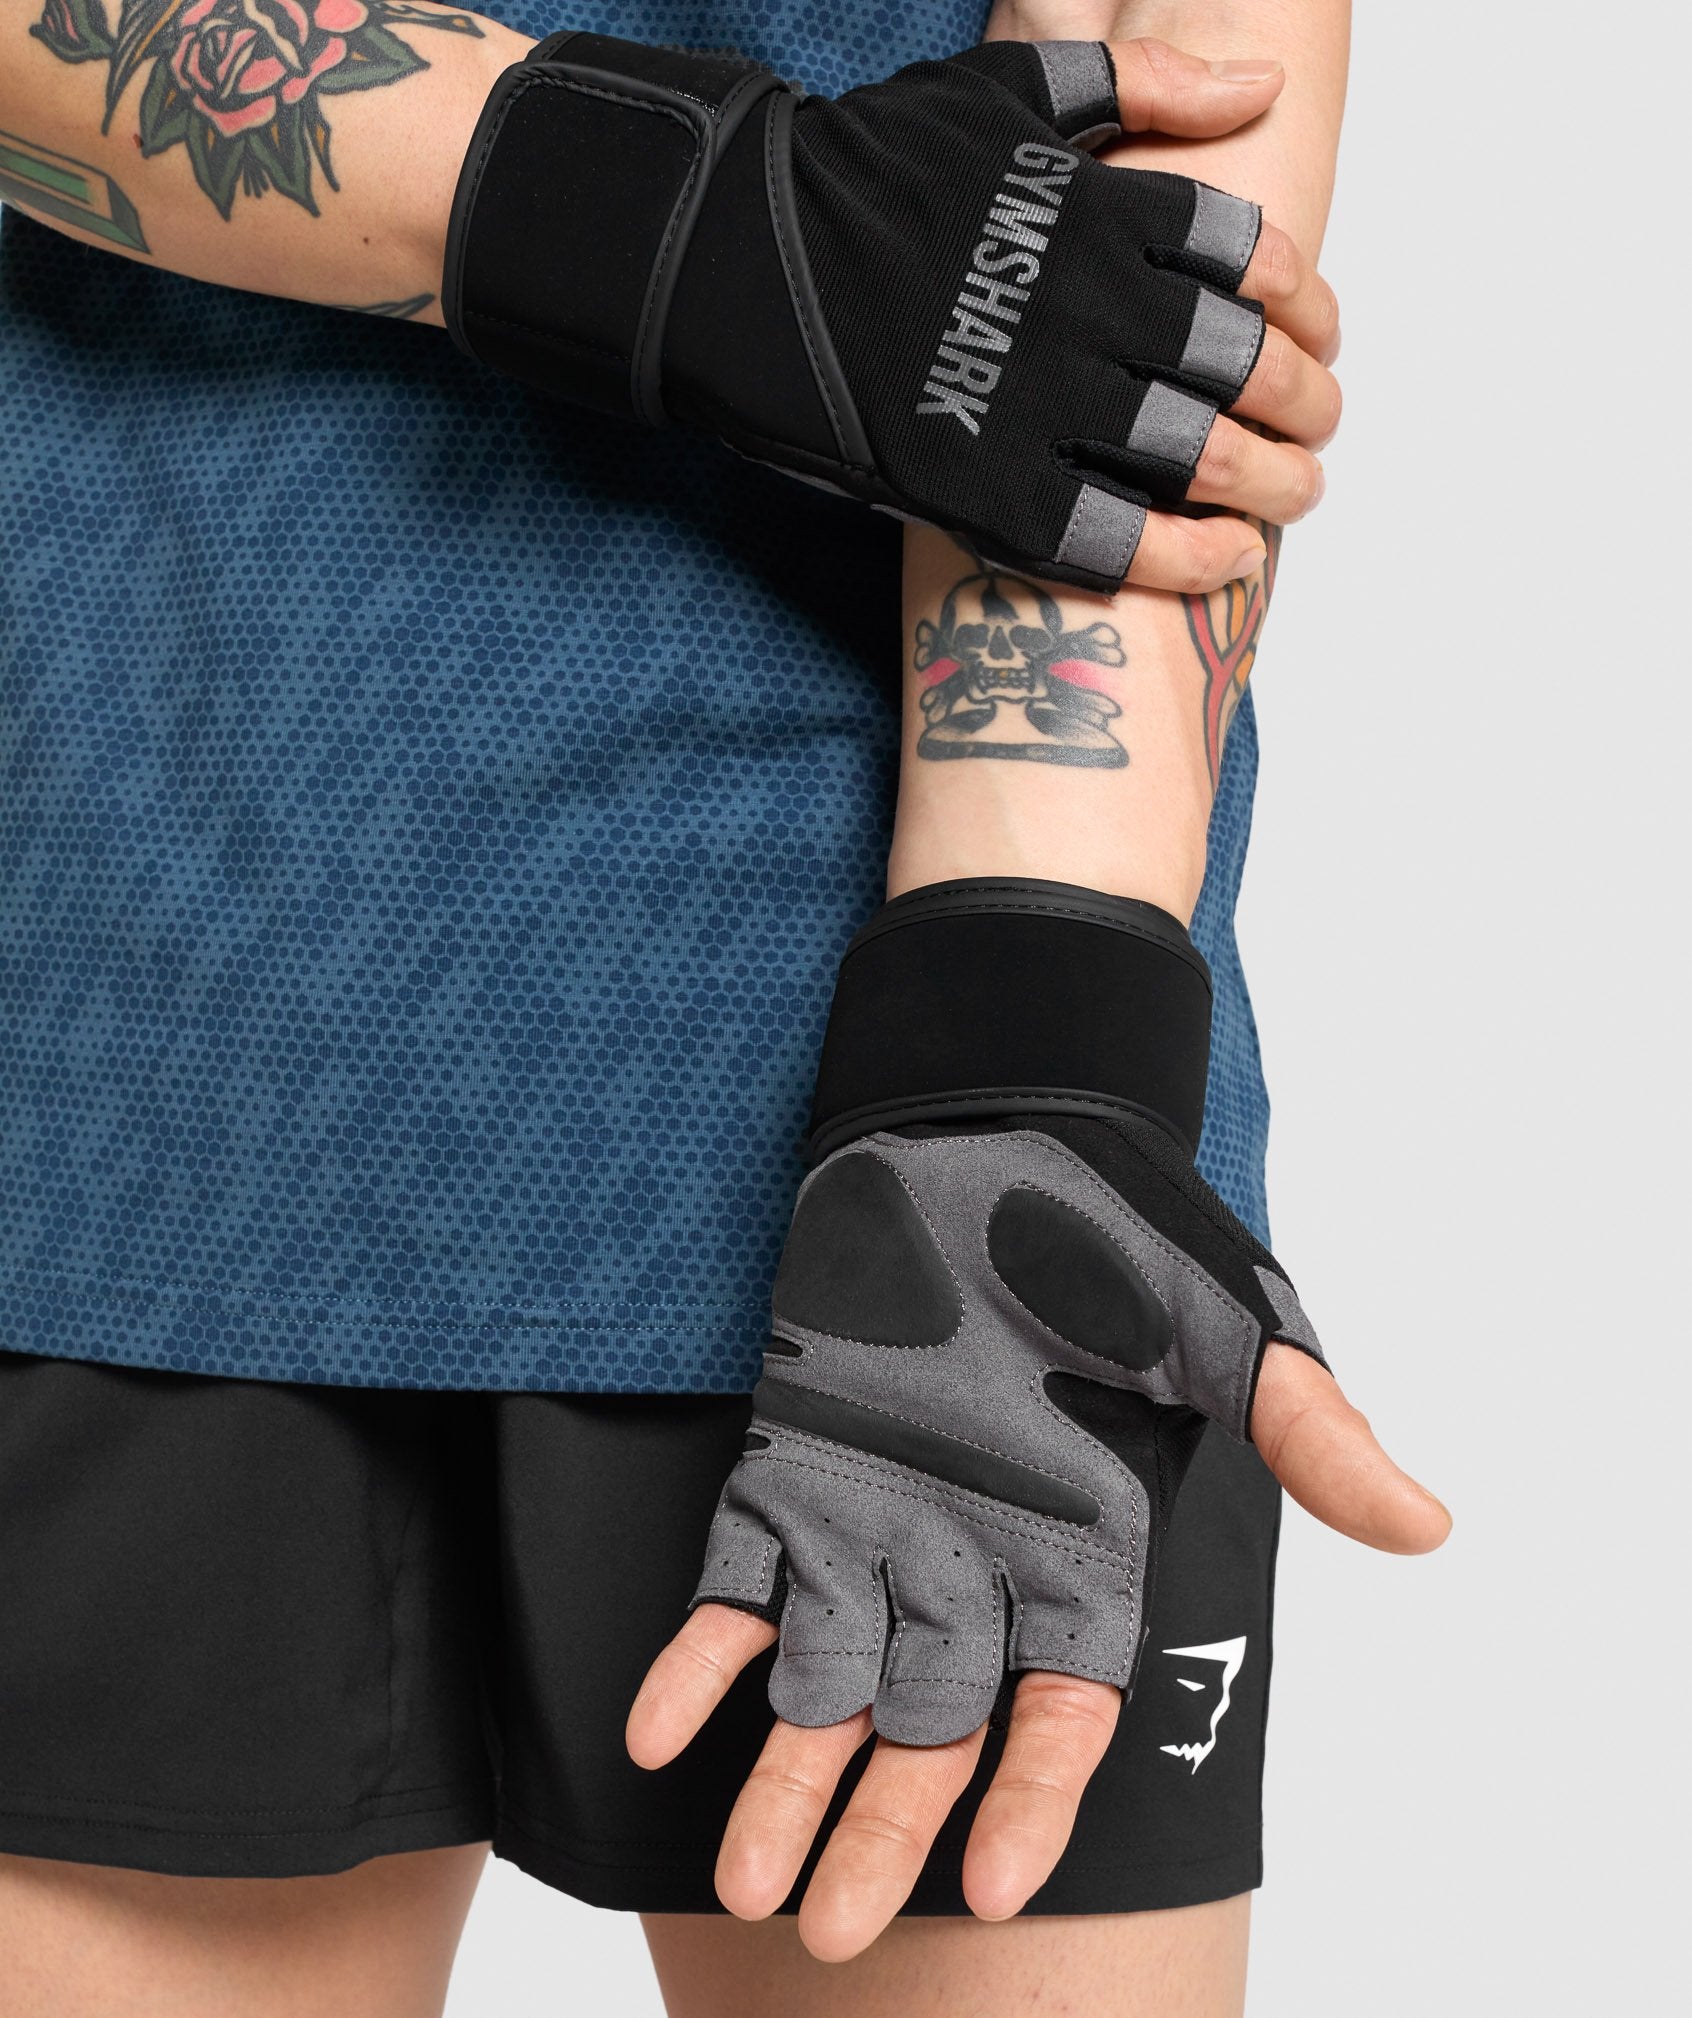 Guantes de gimnasio - Entrena con guantes de protección